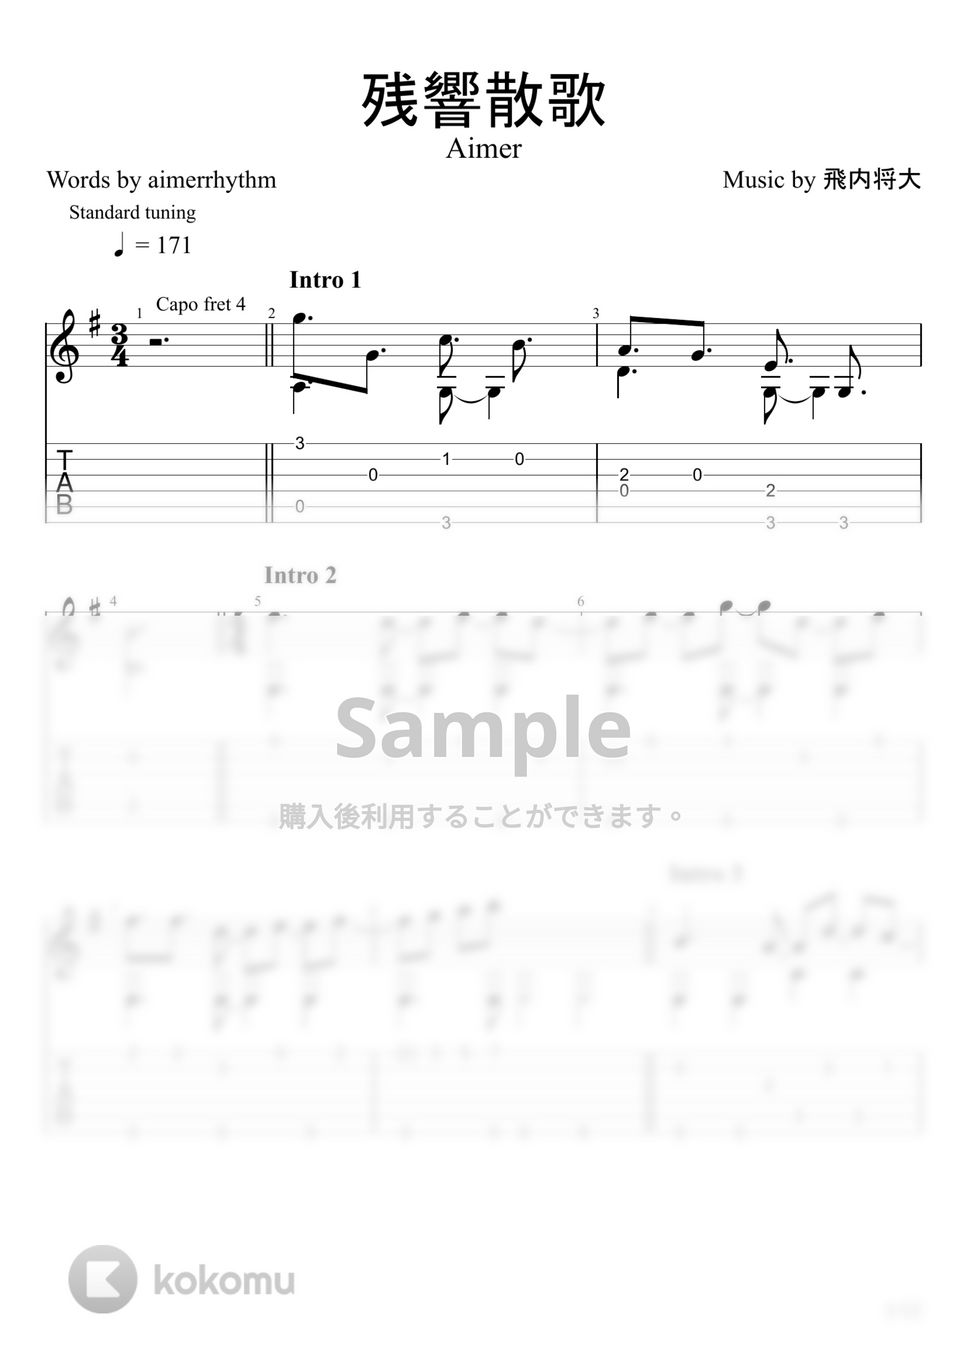 Aimer - 残響散歌 (ソロギター) by u3danchou